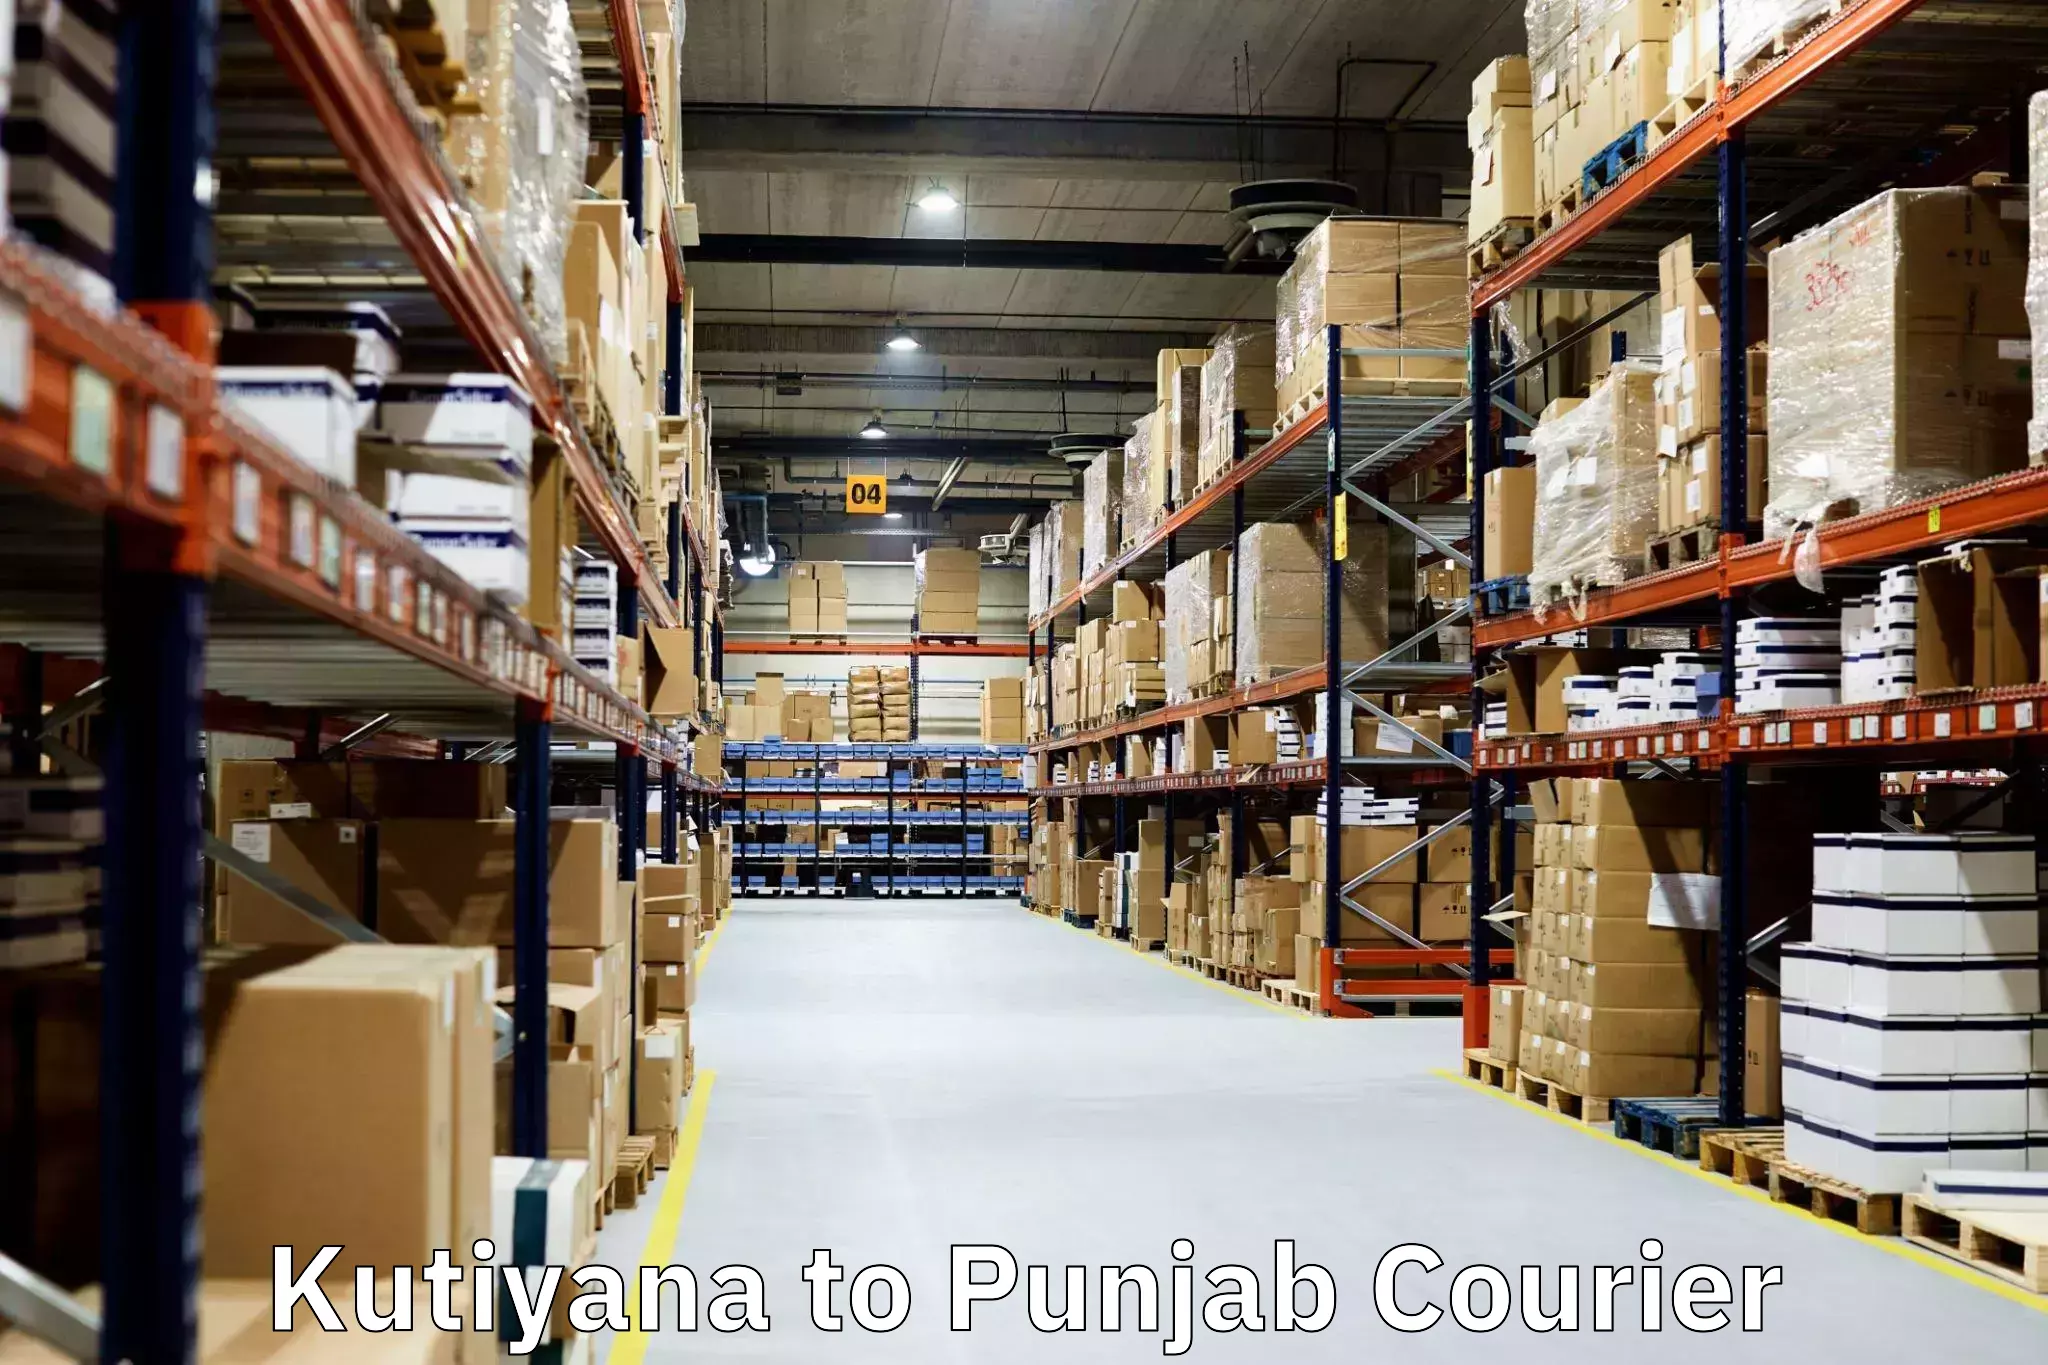 Furniture relocation experts Kutiyana to Punjab